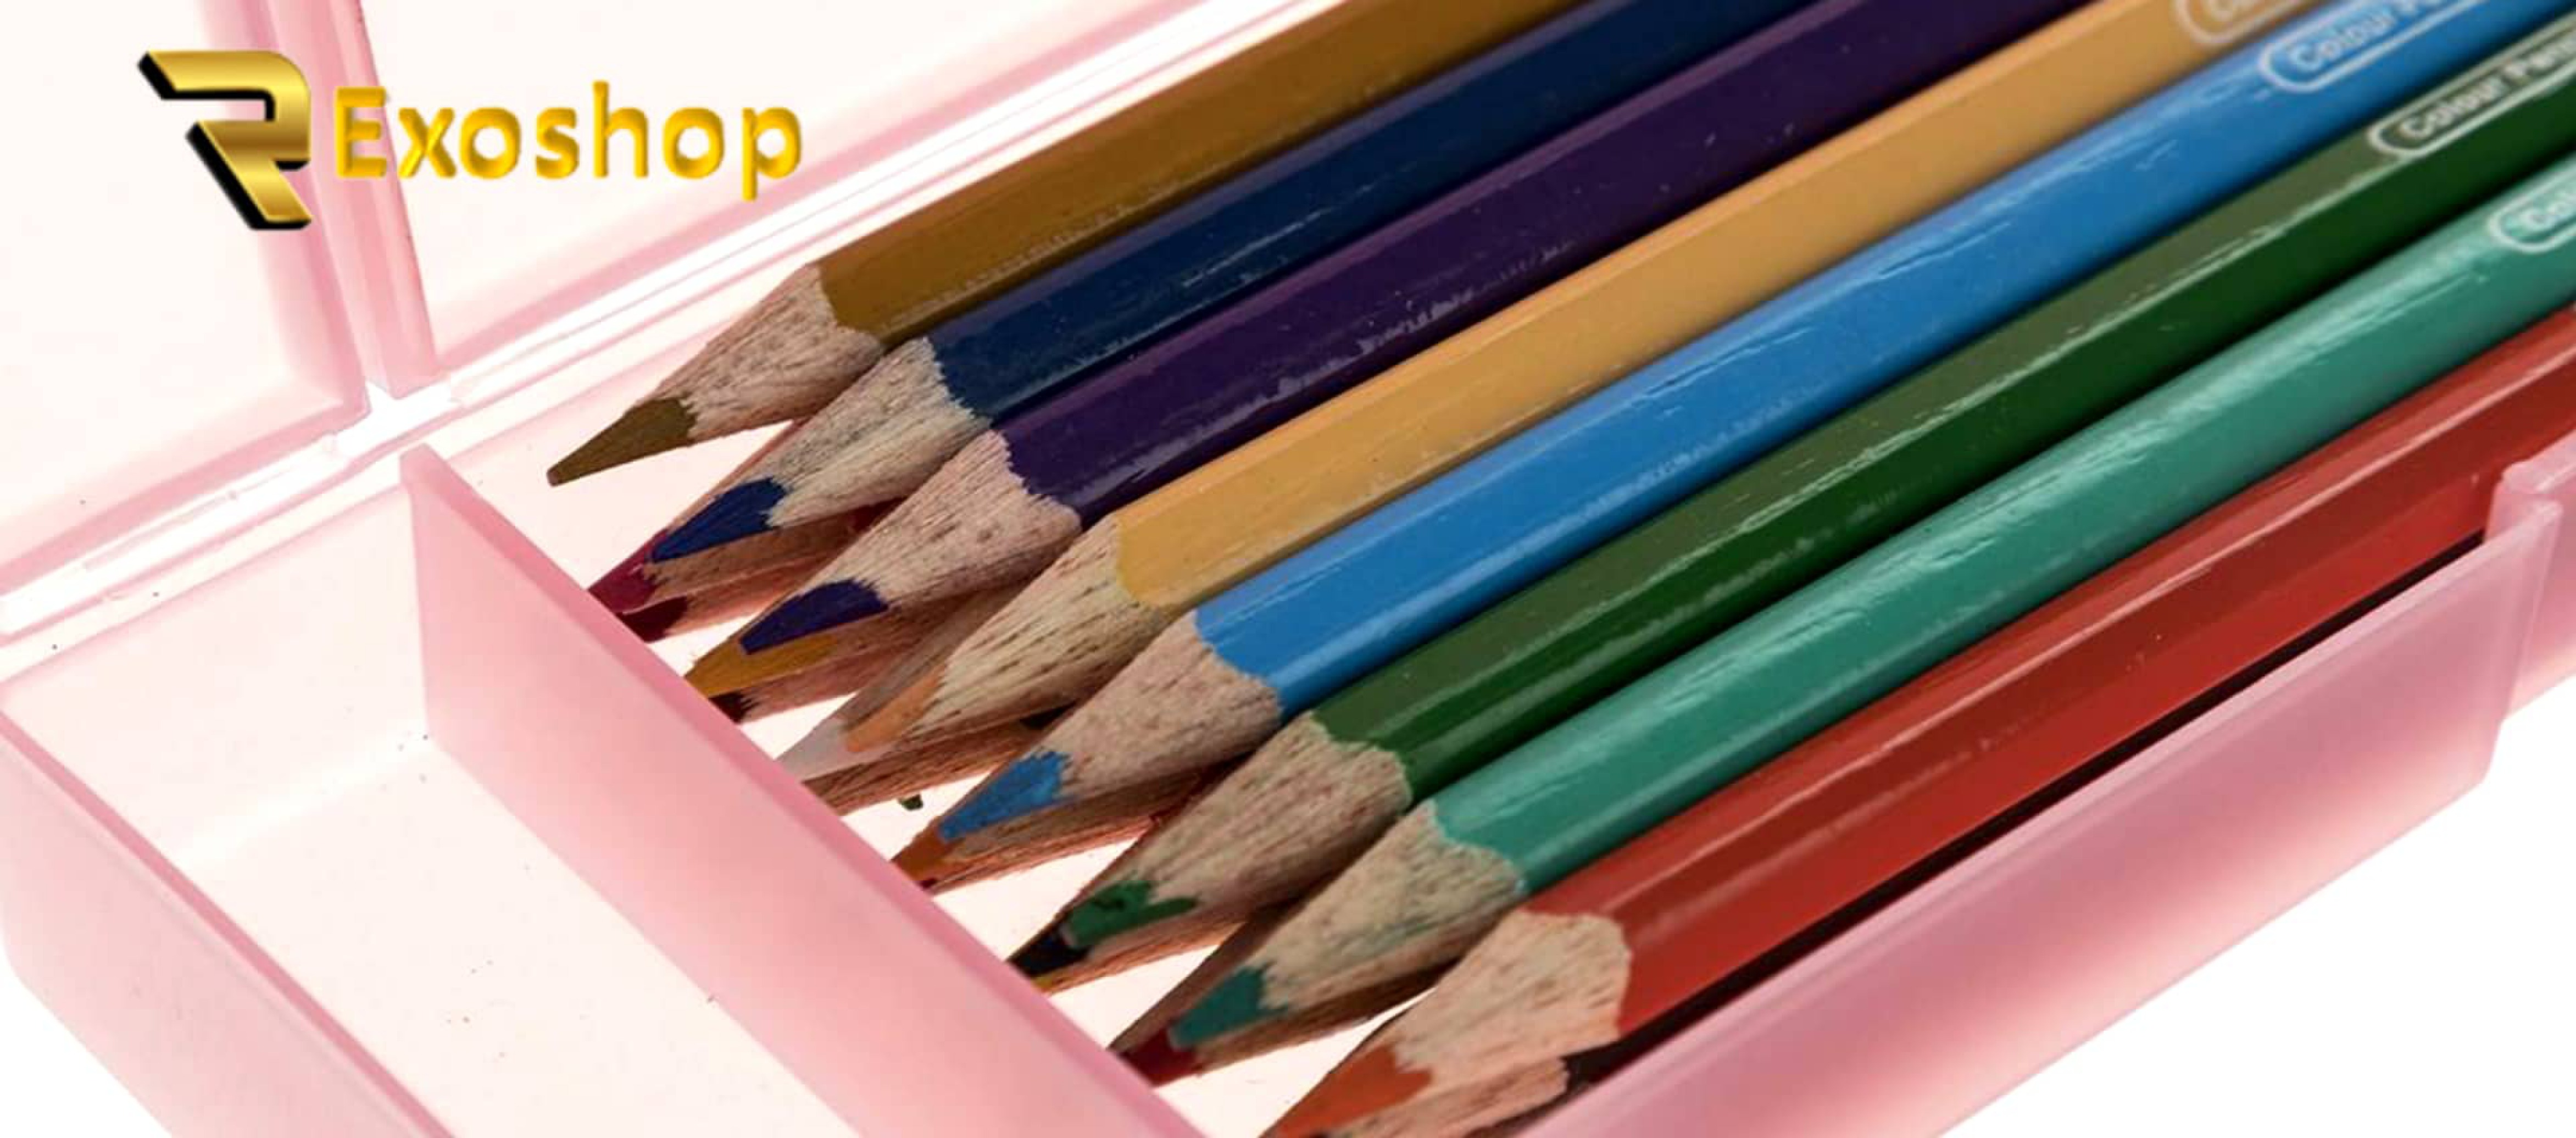  مداد رنگی 24 رنگ آرت لاین مدلECP24PLS/IL جزء بهترین مداد رنگی ها است که با قیمتی ارزان در رکسوشاپ موجود می باشد 